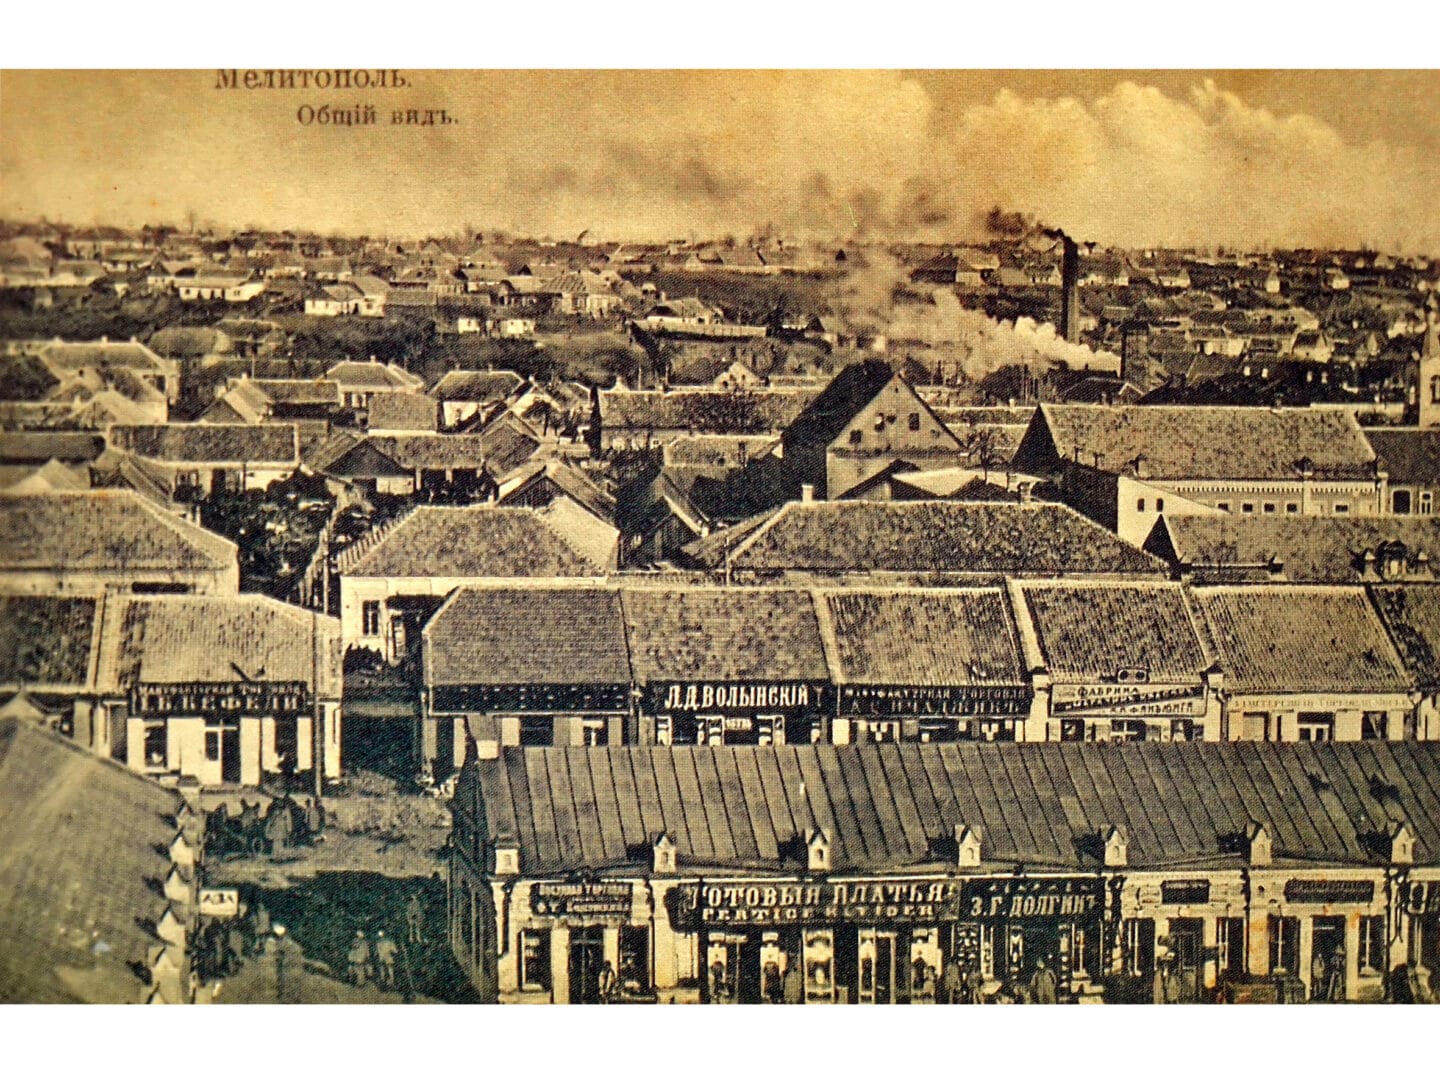 Melitopol in the 1900s